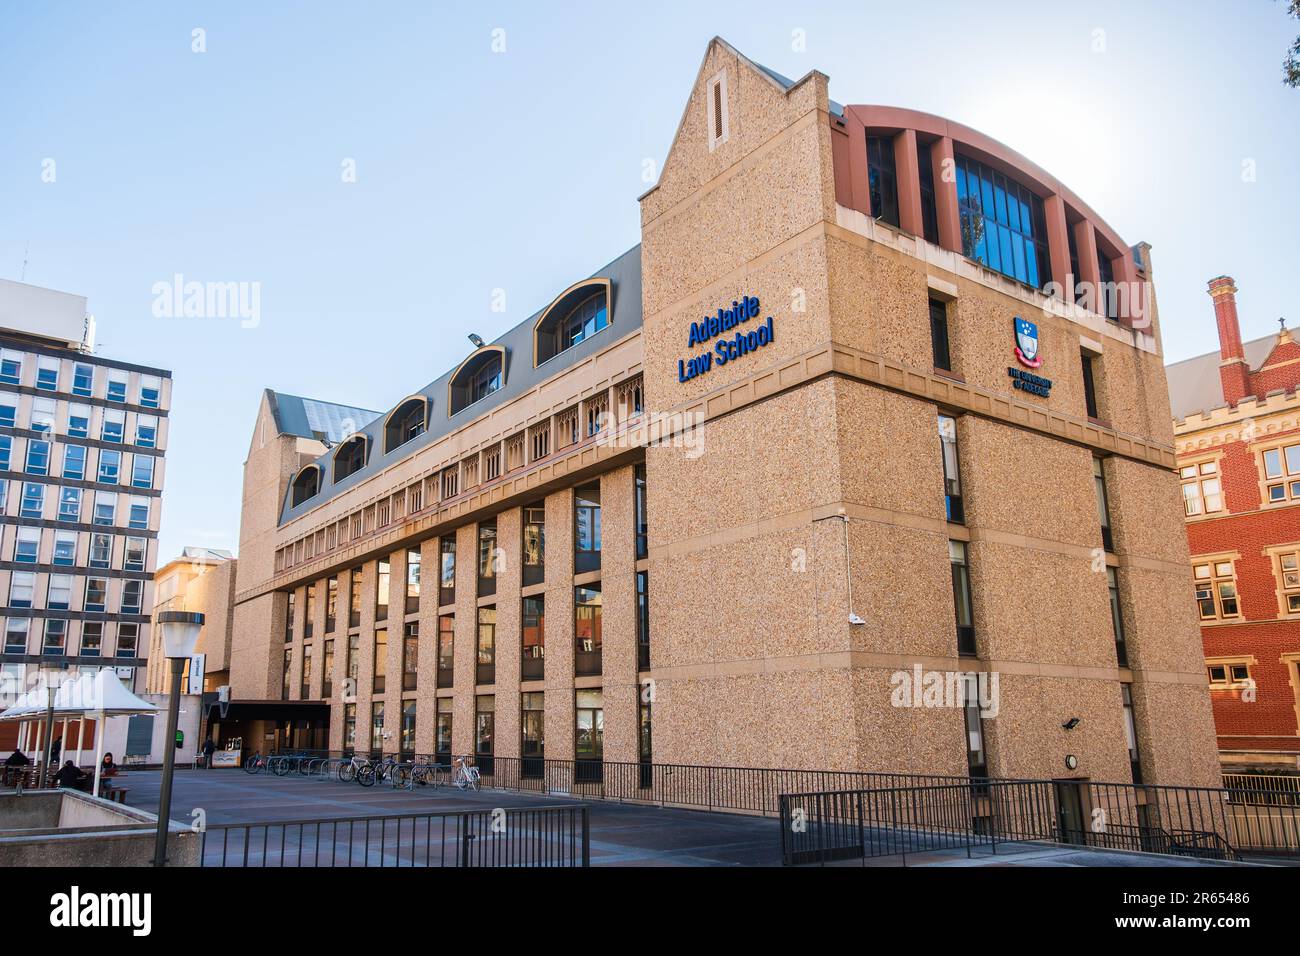 Adelaide, Südaustralien - 2. September 2019: Gebäudefassade der Adelaide Law School, Universität von Adelaide im Stadtzentrum an einem hellen Tag Stockfoto